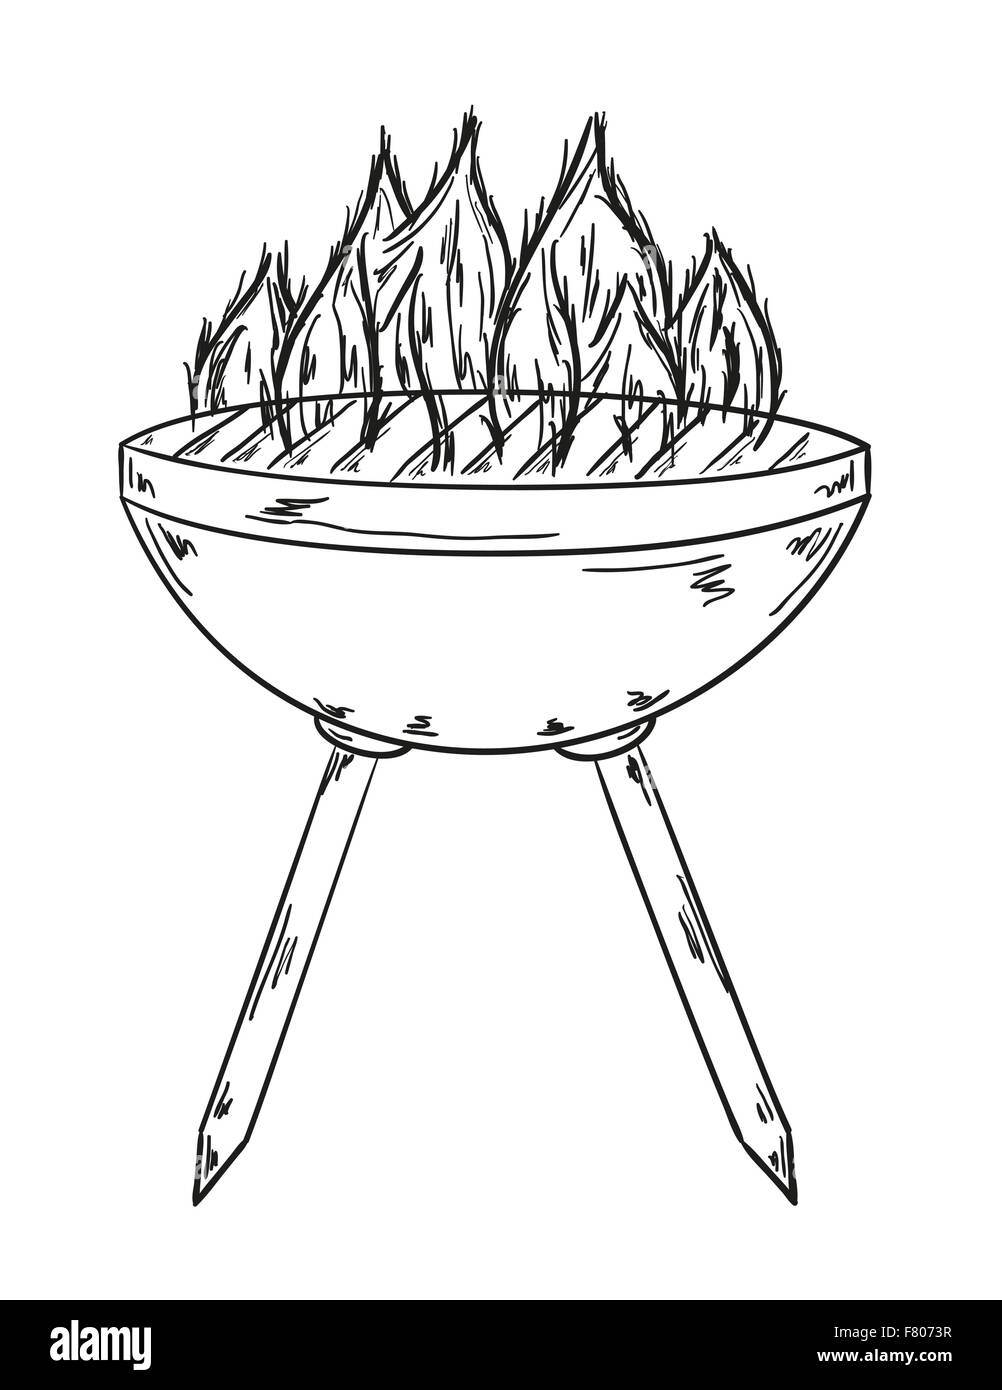 Schizzo della griglia con grandi fiamme Illustrazione Vettoriale